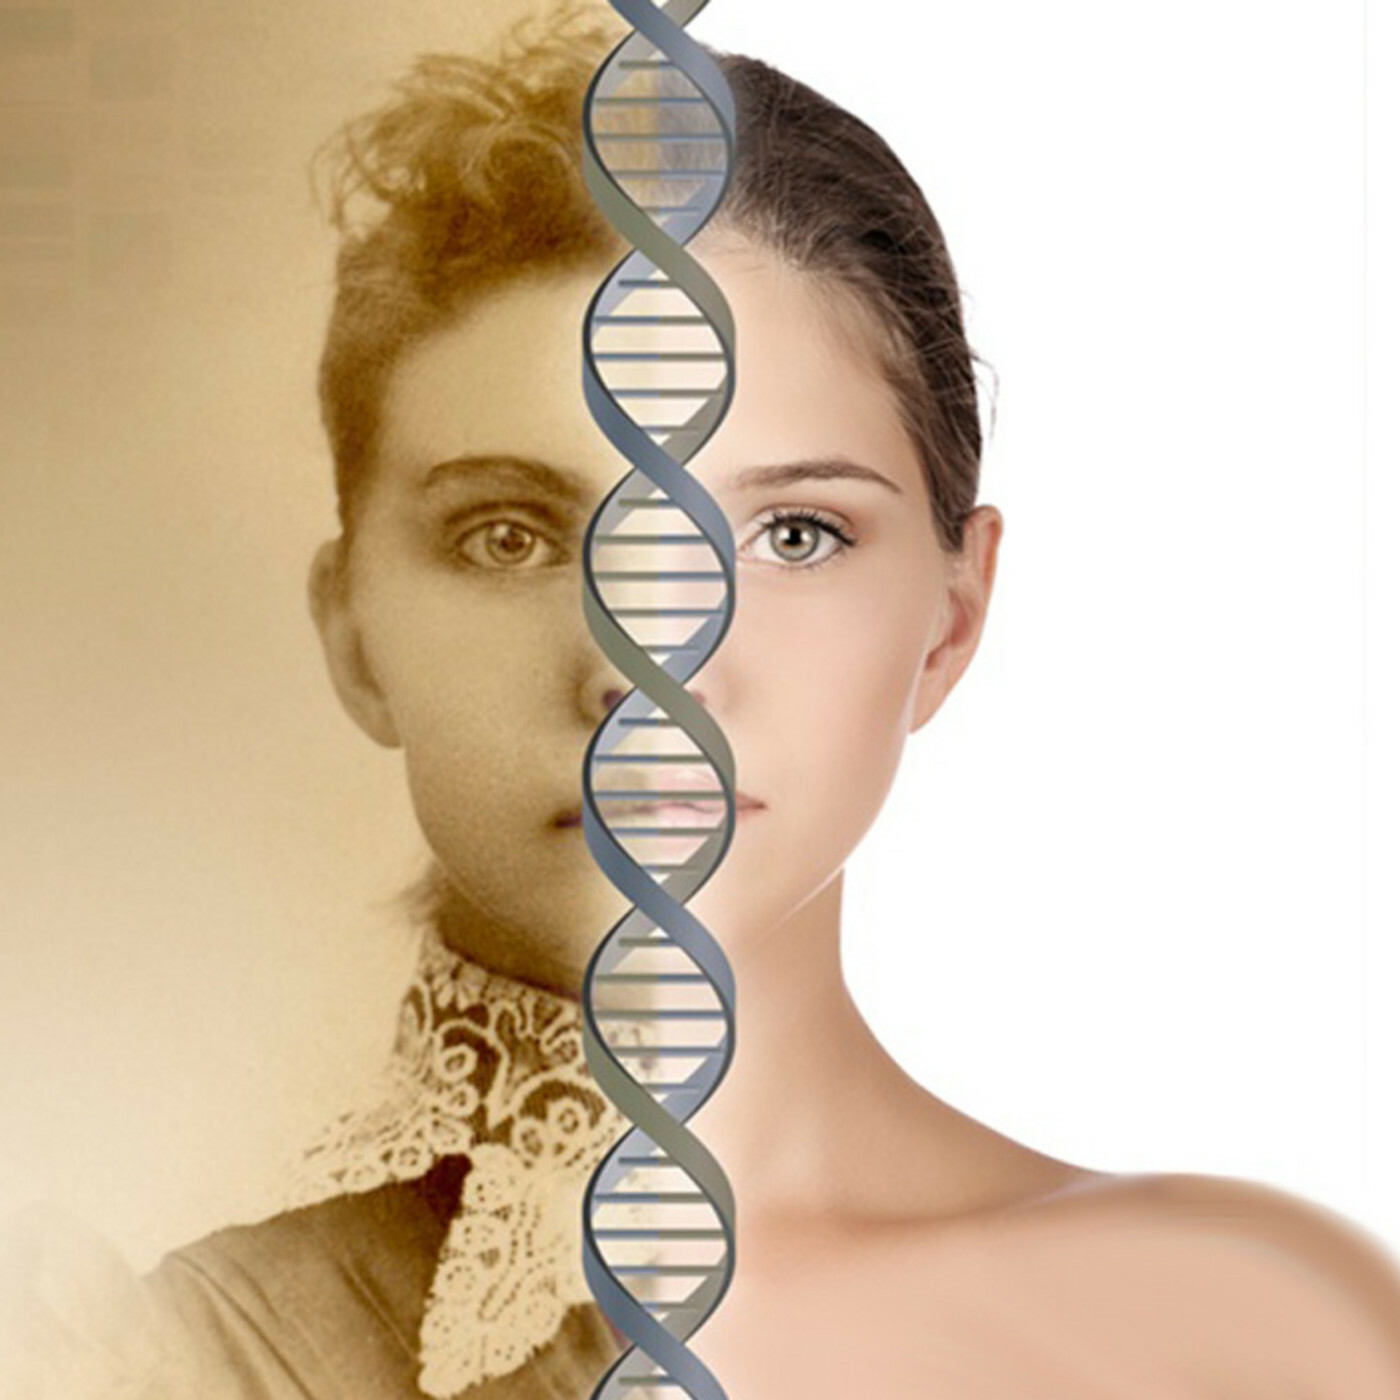 <span style="font-weight: bold;">Тест ДНК на этническое происхождение</span>